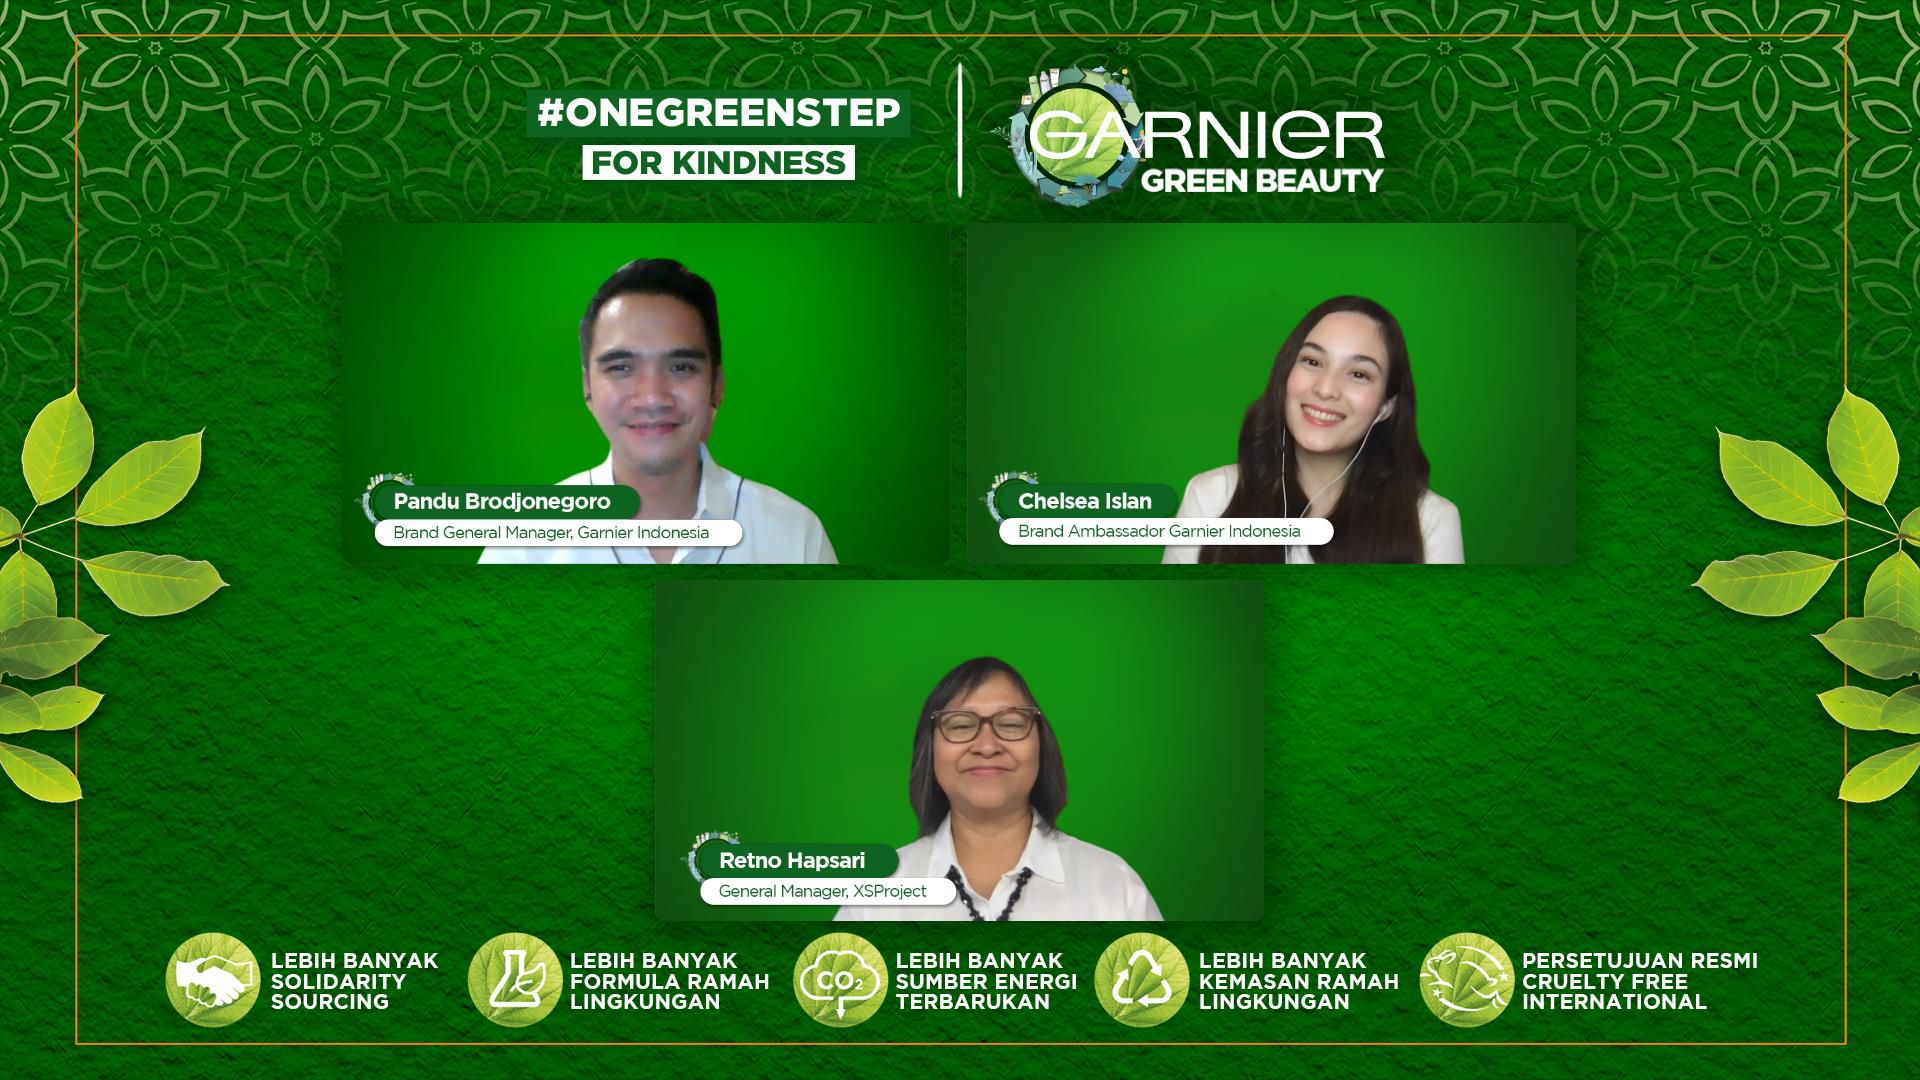 Garnier Green Beauty #OneGreenStep